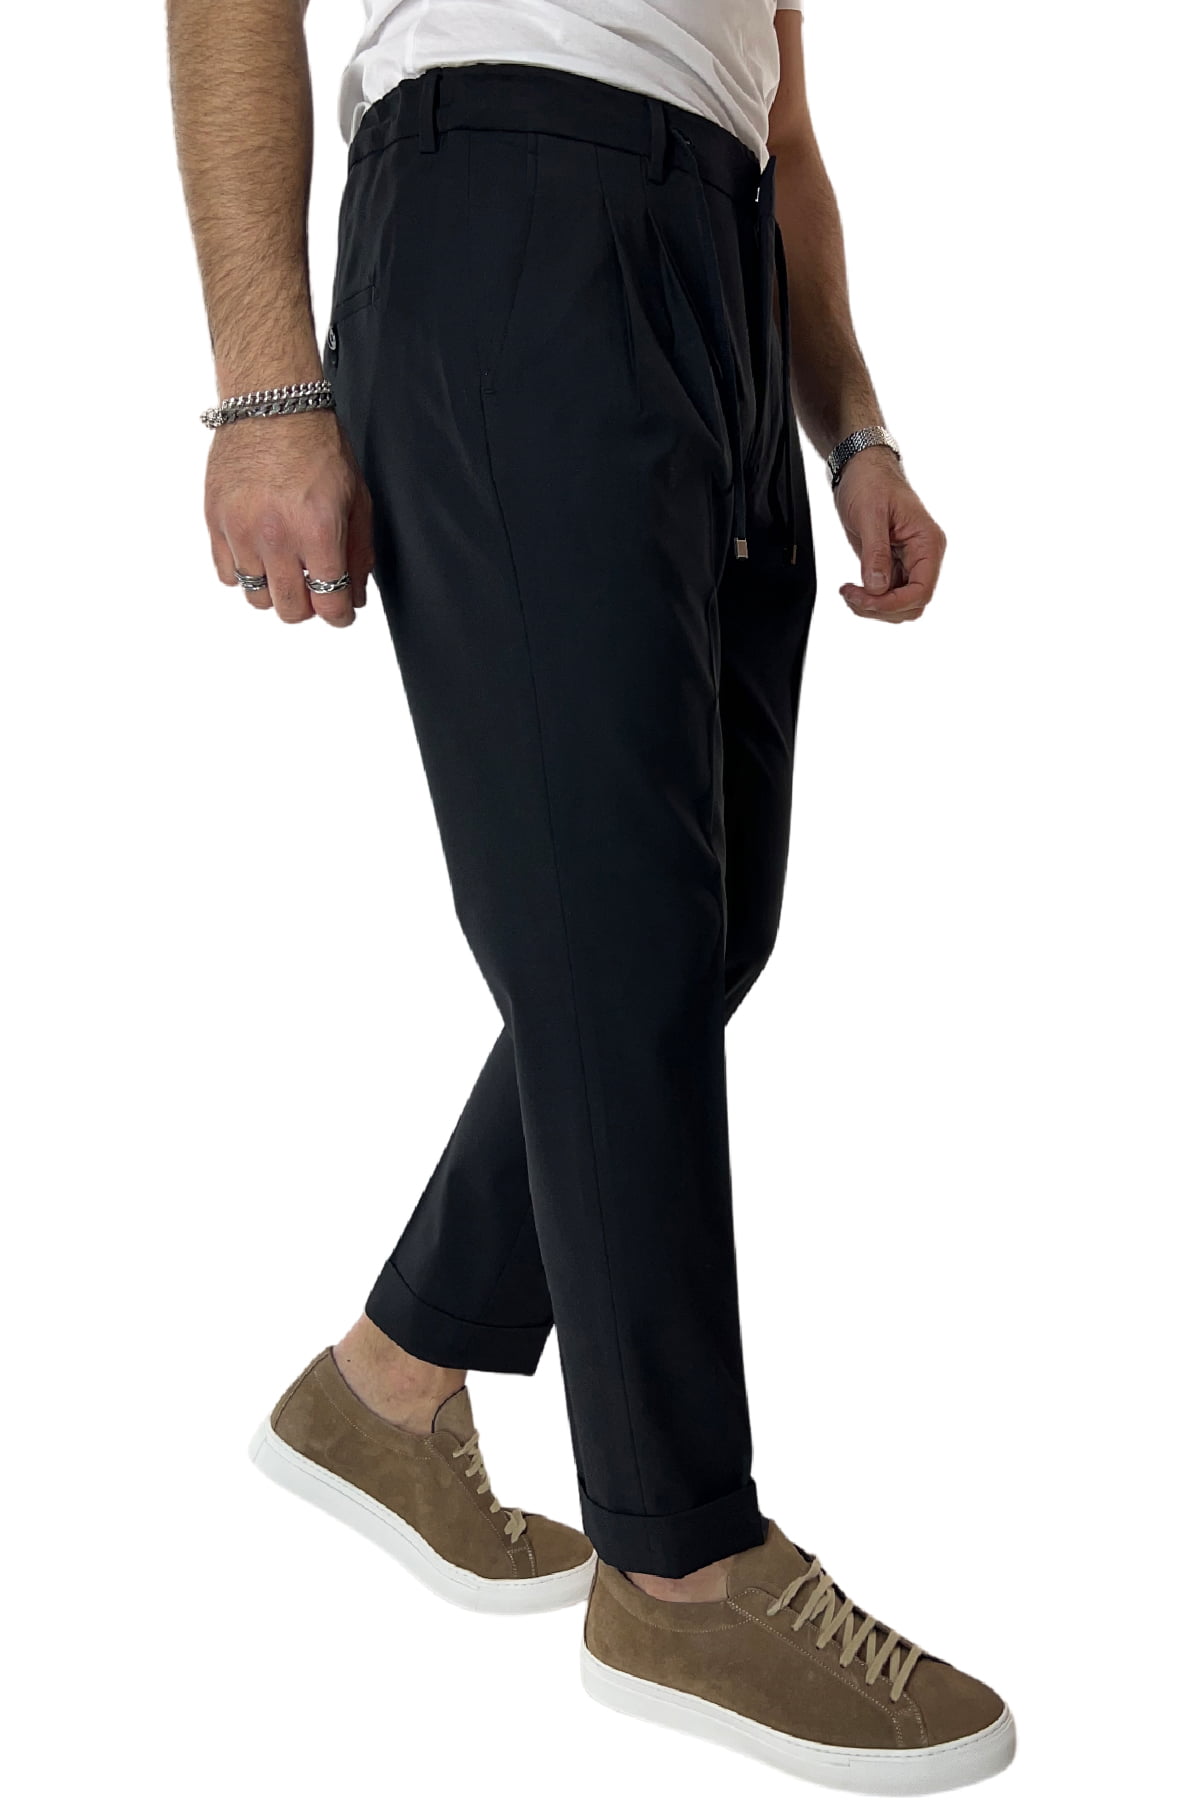 Pantalaccio uomo nero in fresco lana tasca america con doppia pence e laccio in vita risvolto 4cm